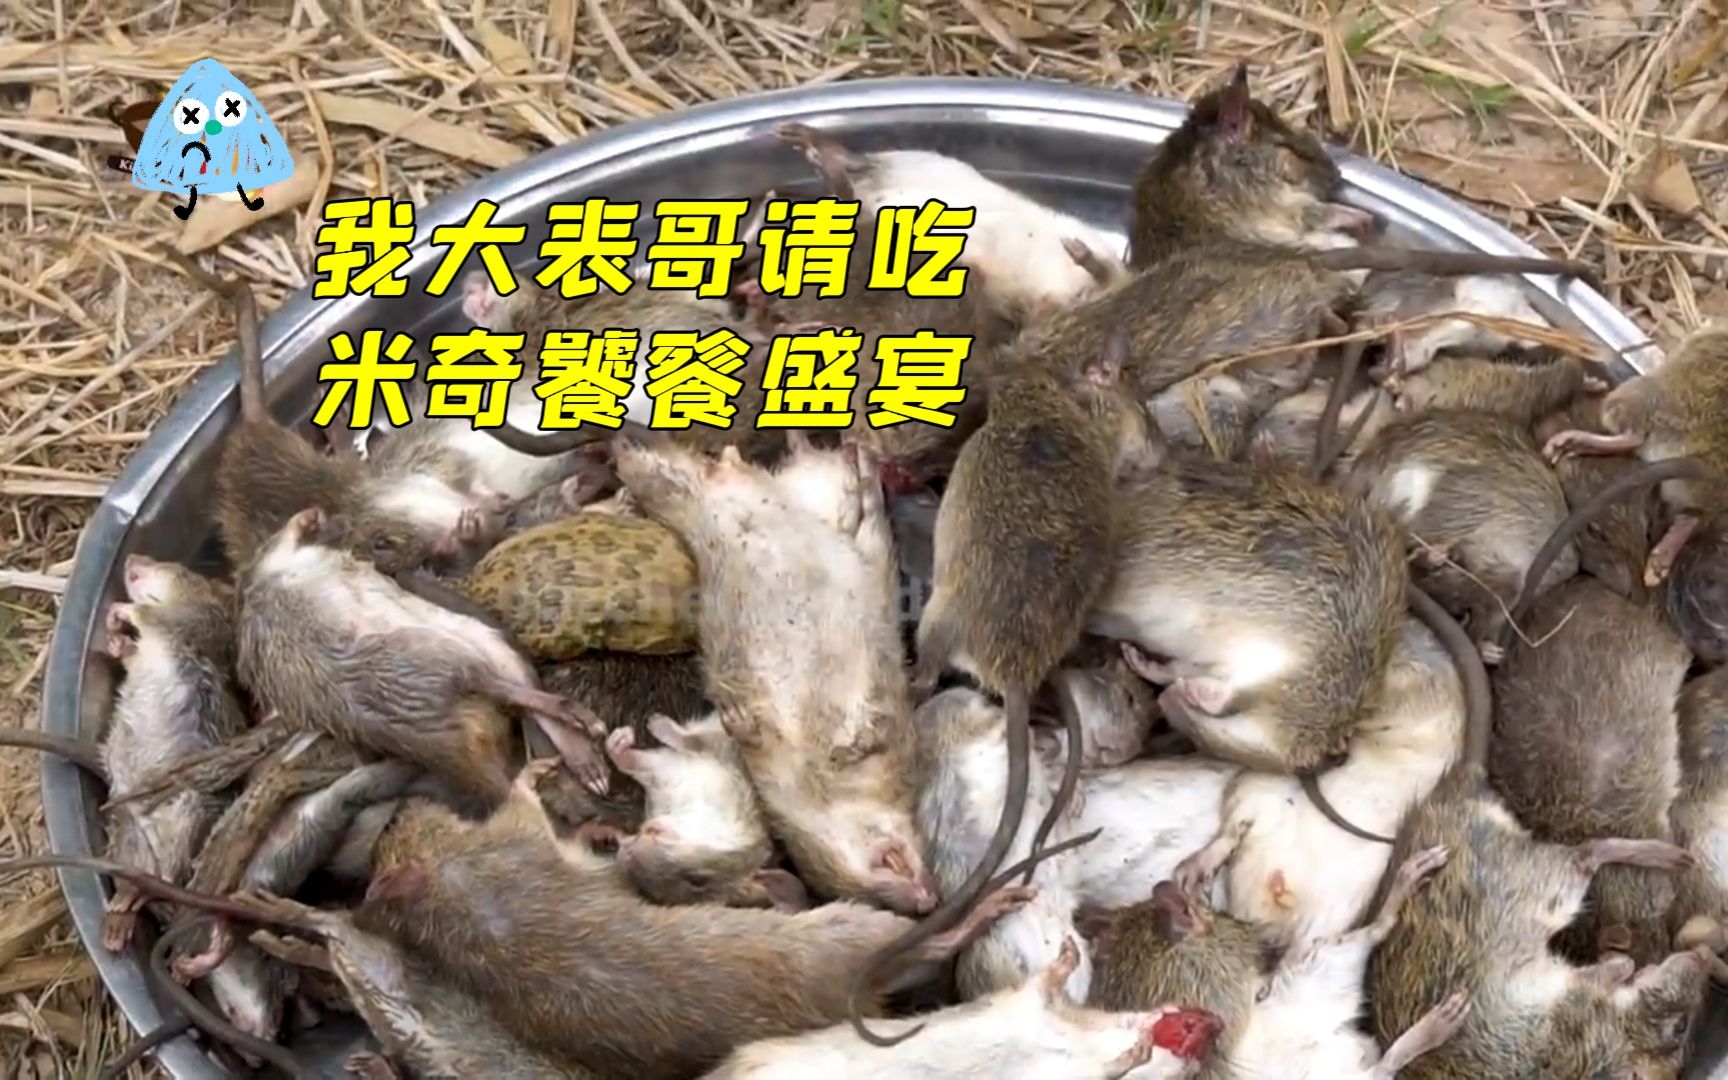 越南人口味真重，荒野美食炸老鼠，胆小误入